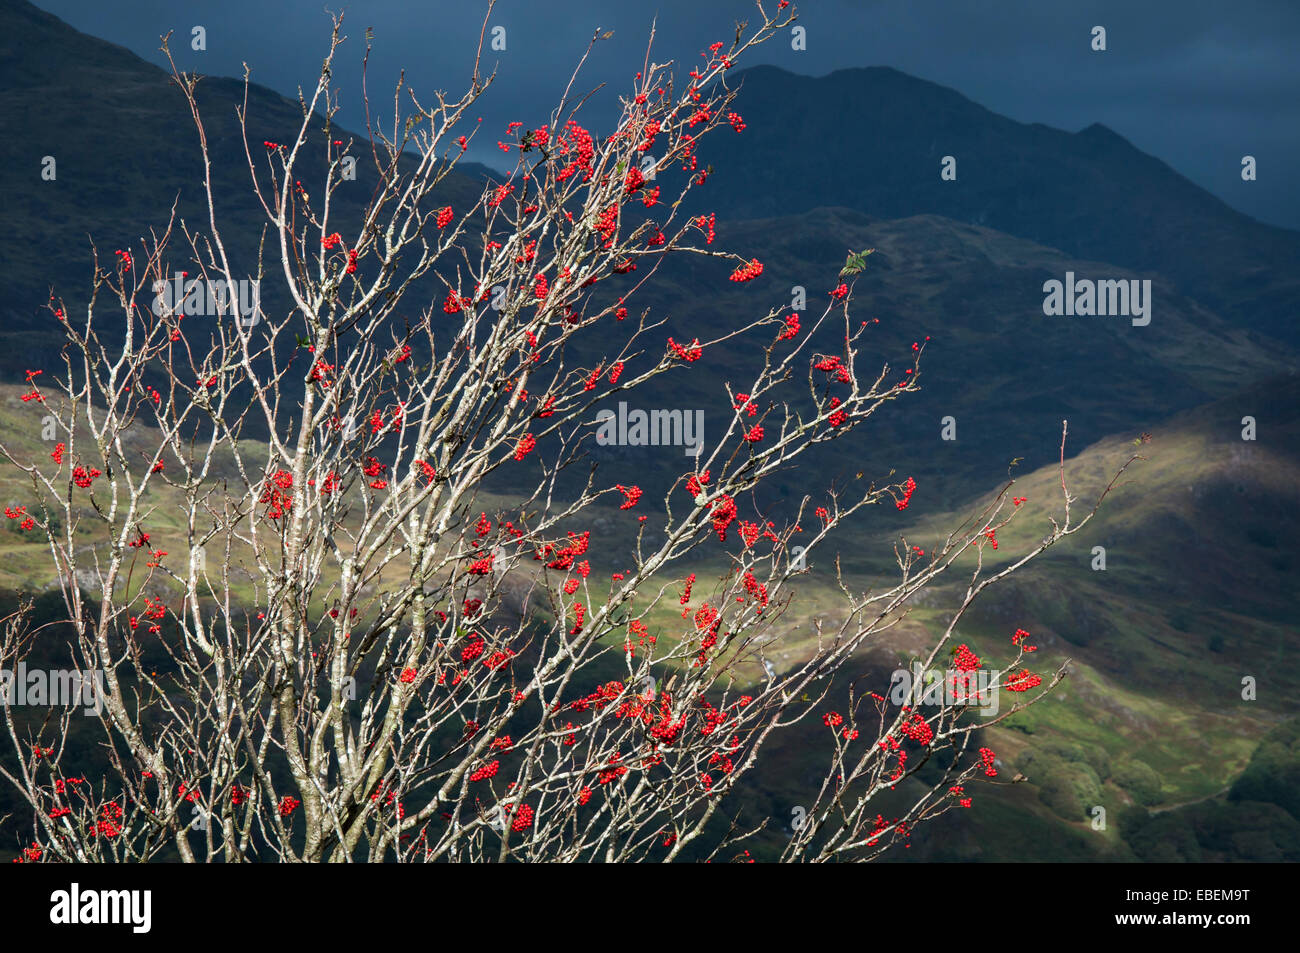 Leuchtend rote Baum Vogelbeeren in Snowdonia Landschaft. Berge im Schatten hinter Baum der von Sonnenlicht erhellt wird. Stockfoto